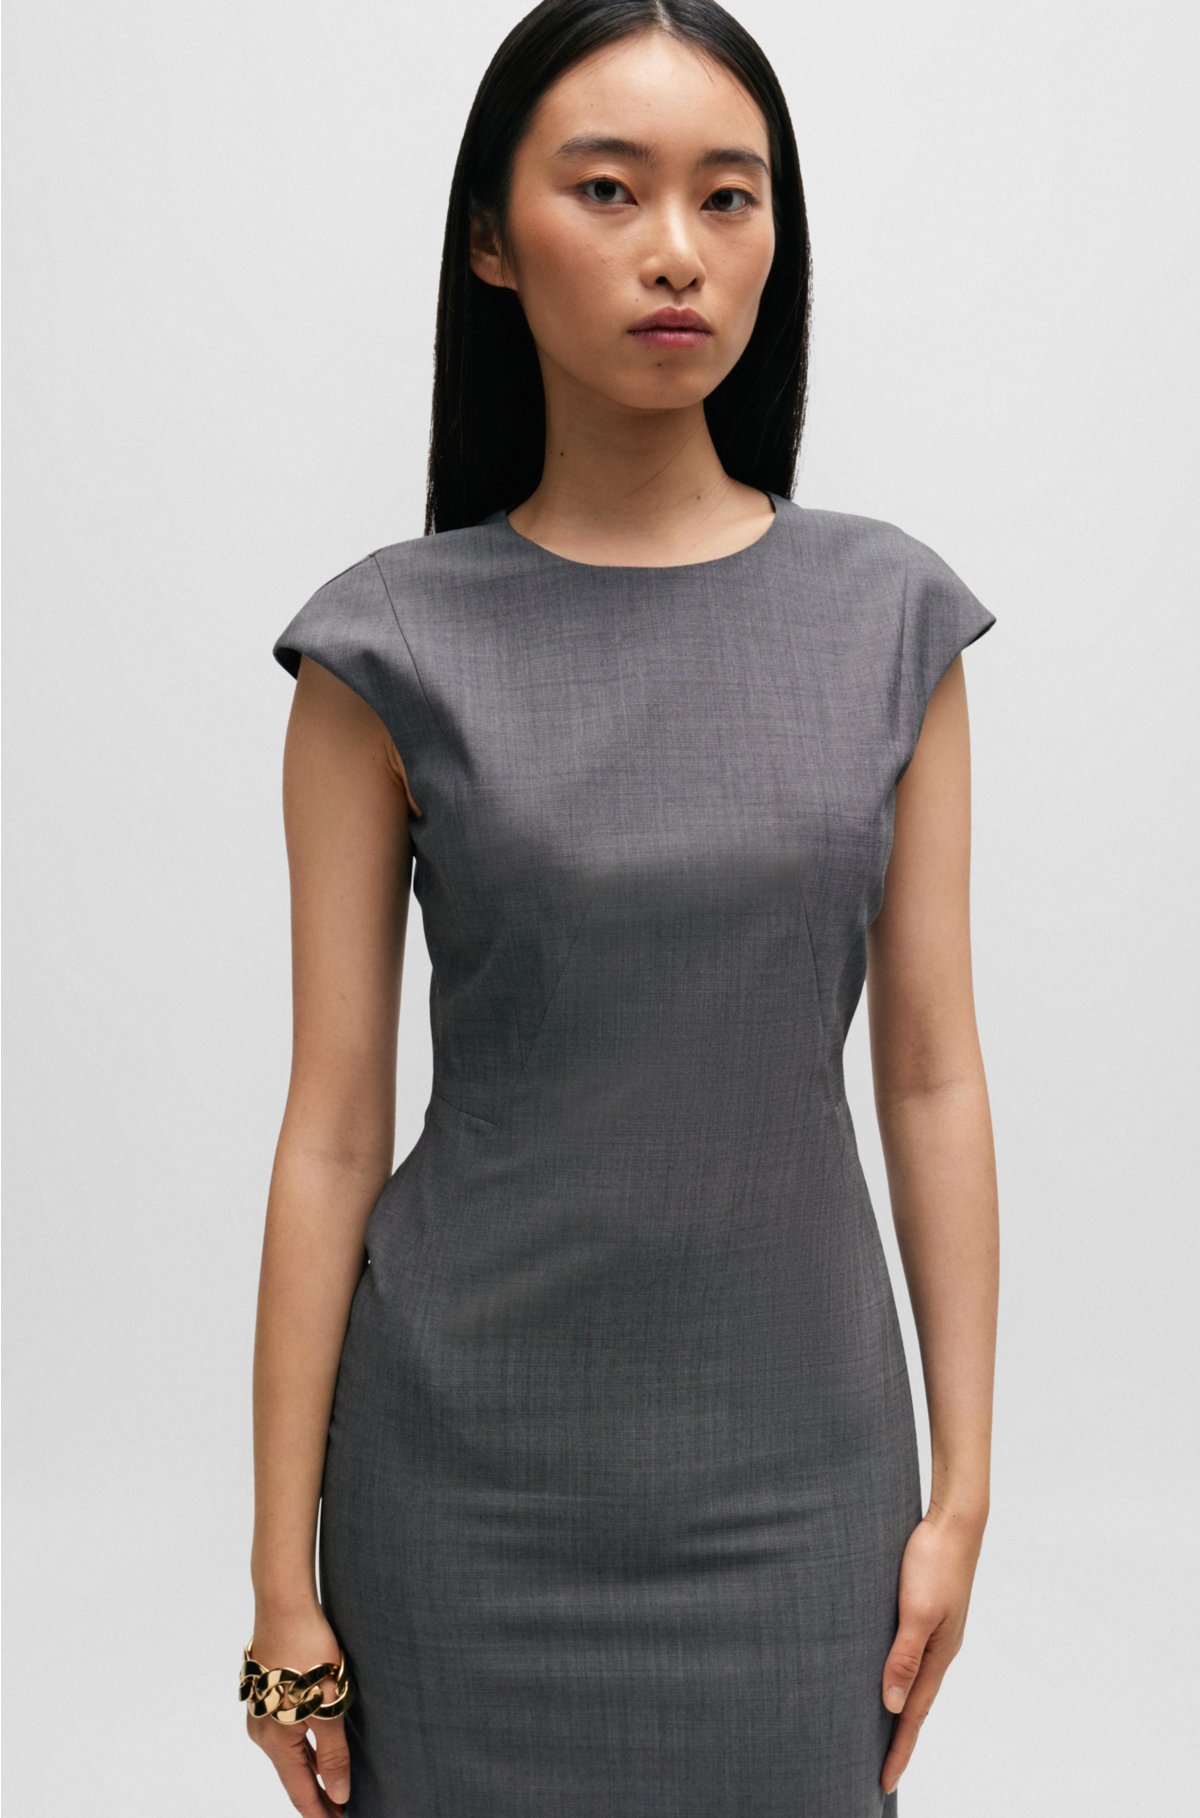 Cap-sleeve shift dress in virgin wool, Grey